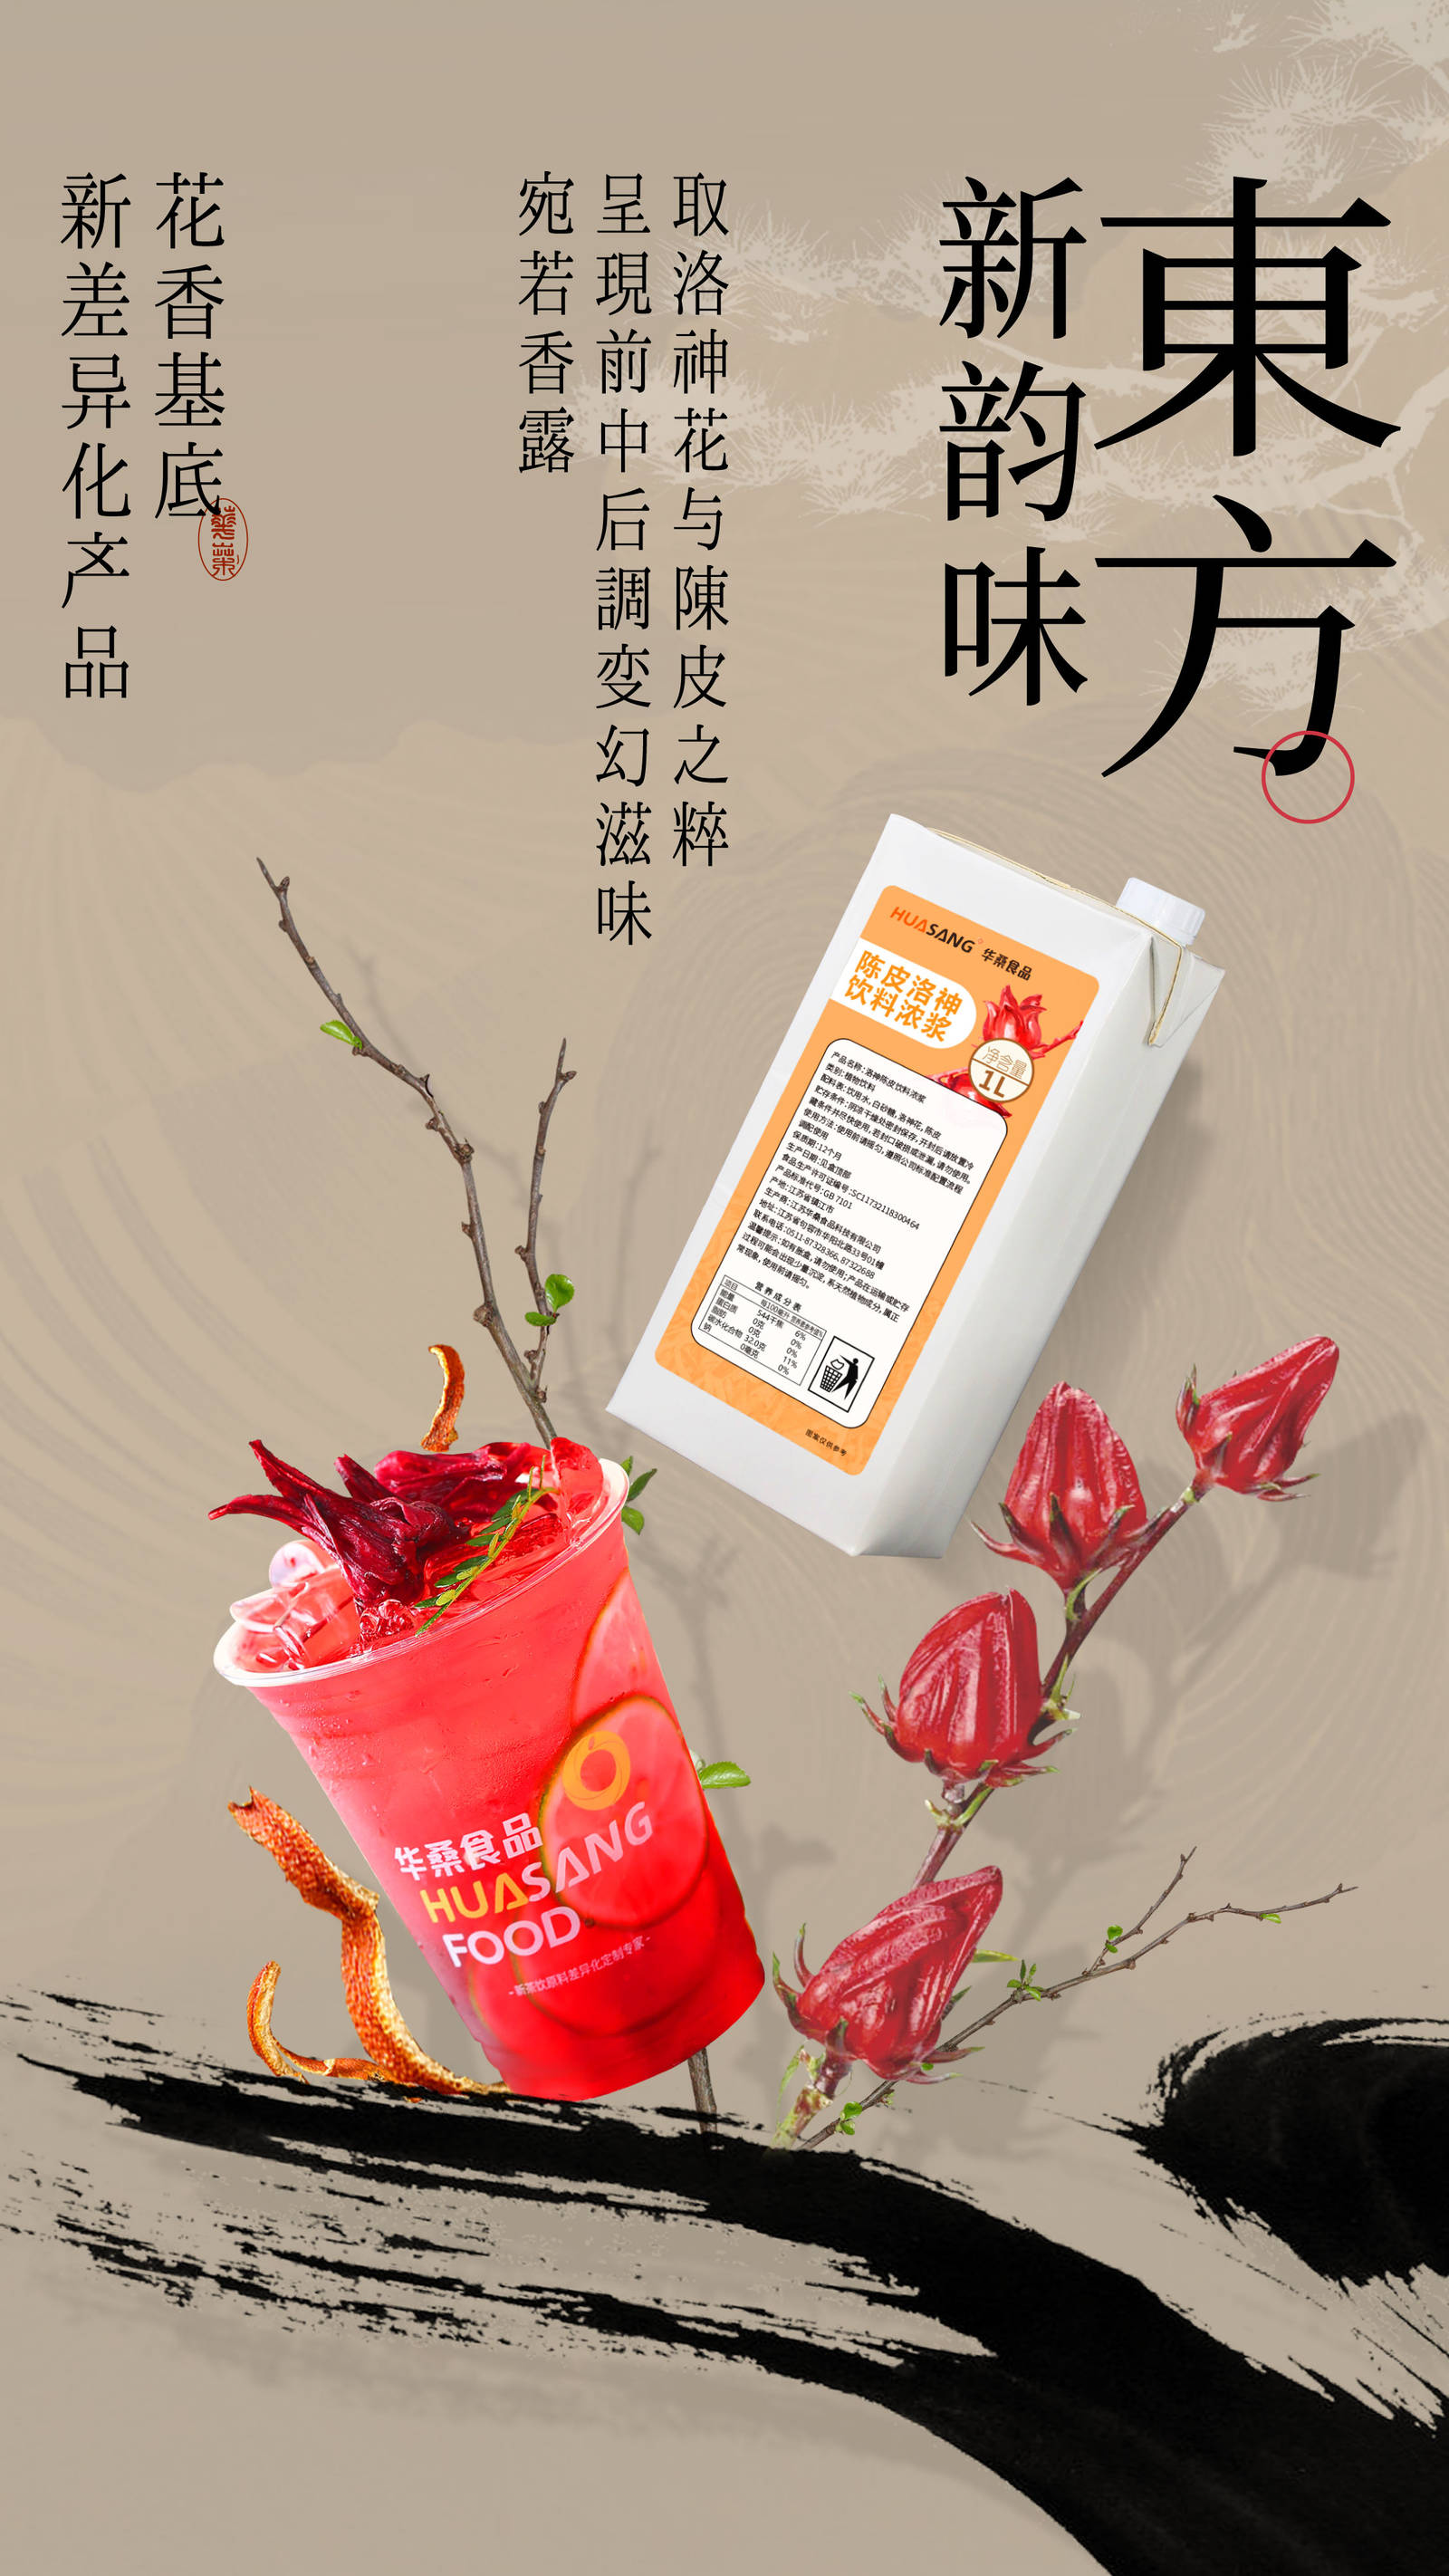 中国风饮品新品推广宣传海报-第2张